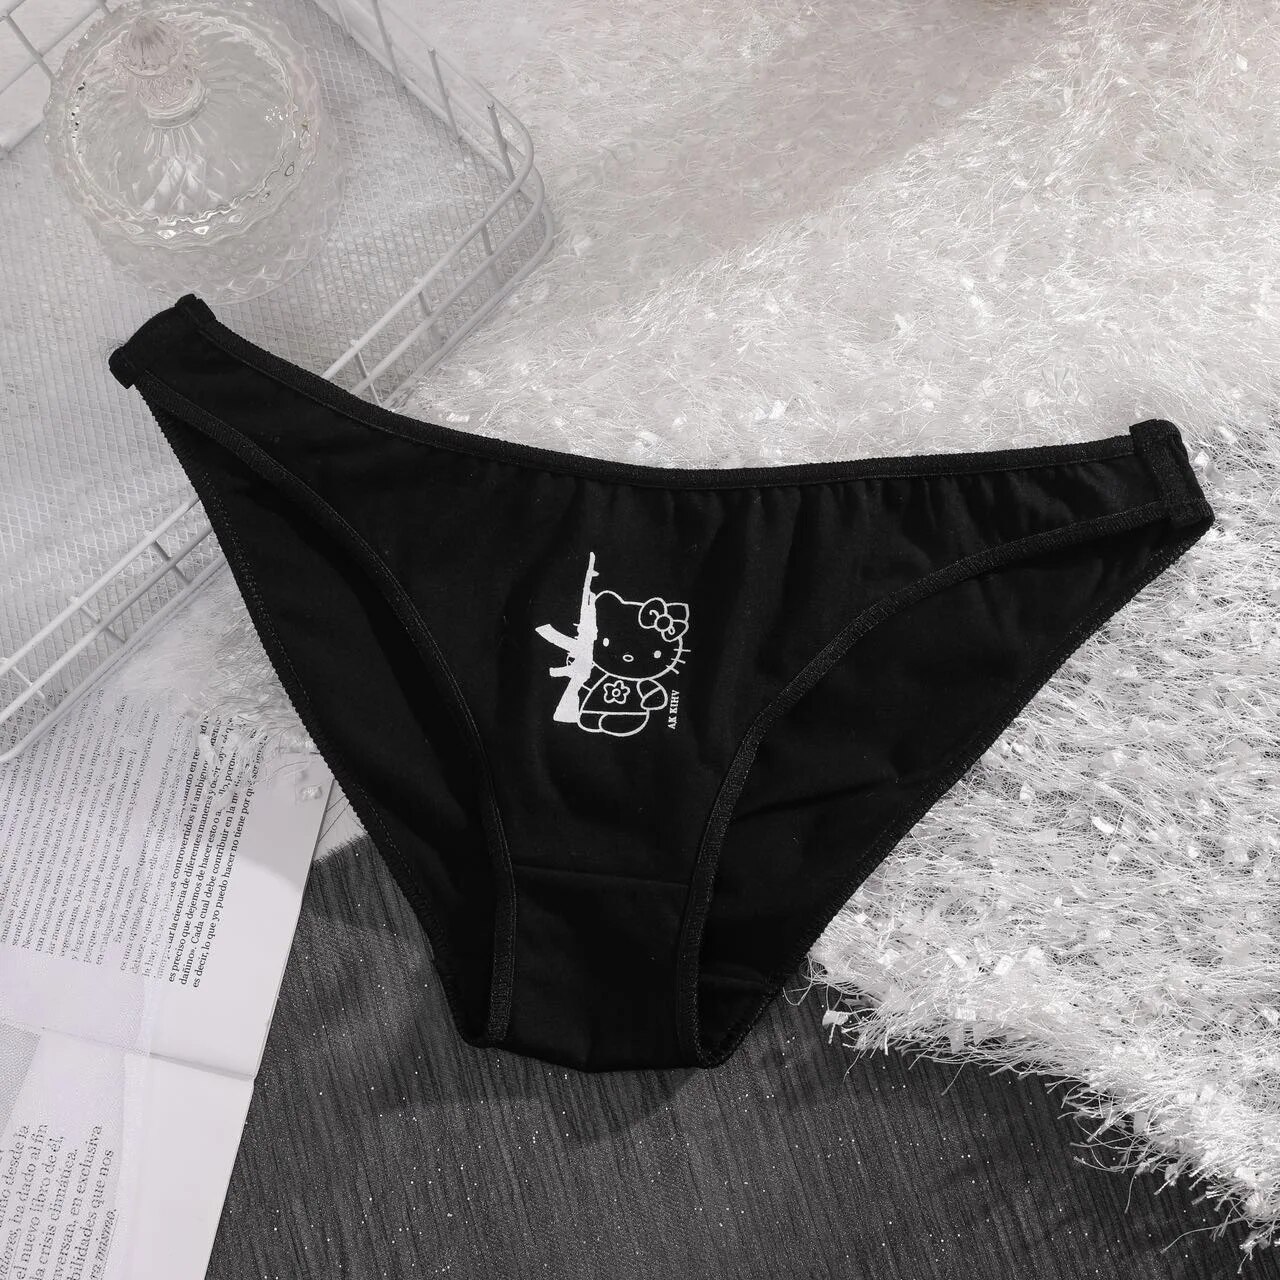 KMES] Sanrio Hello Kitty Women's Panties Sexy Thong Female